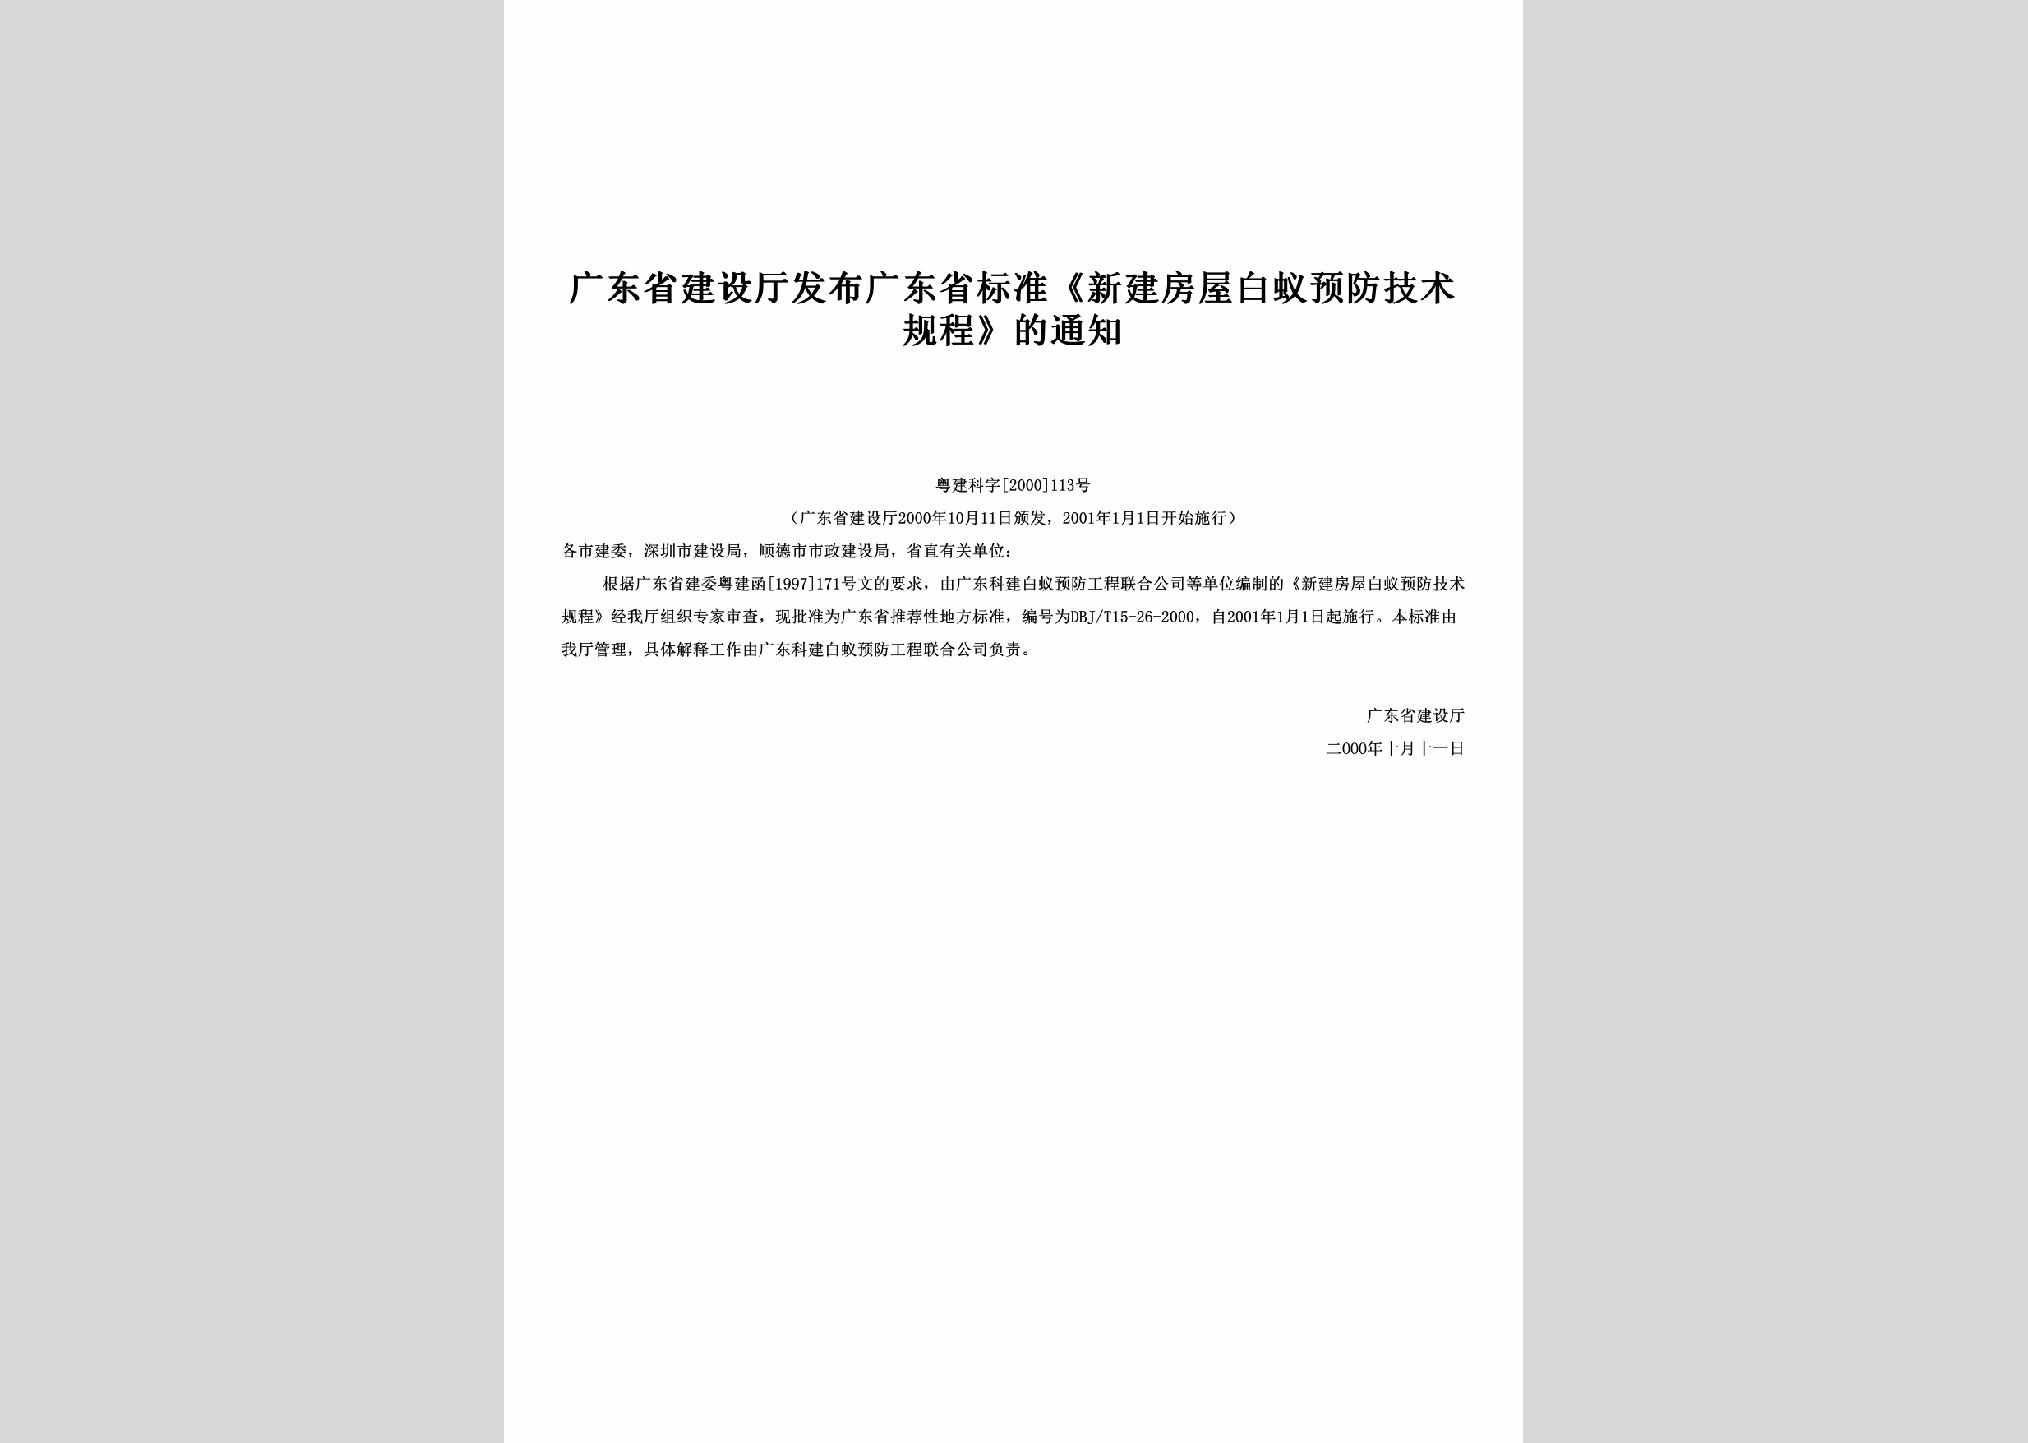 粤建科字[2000]113号：发布广东省标准《新建房屋白蚁预防技术规程》的通知